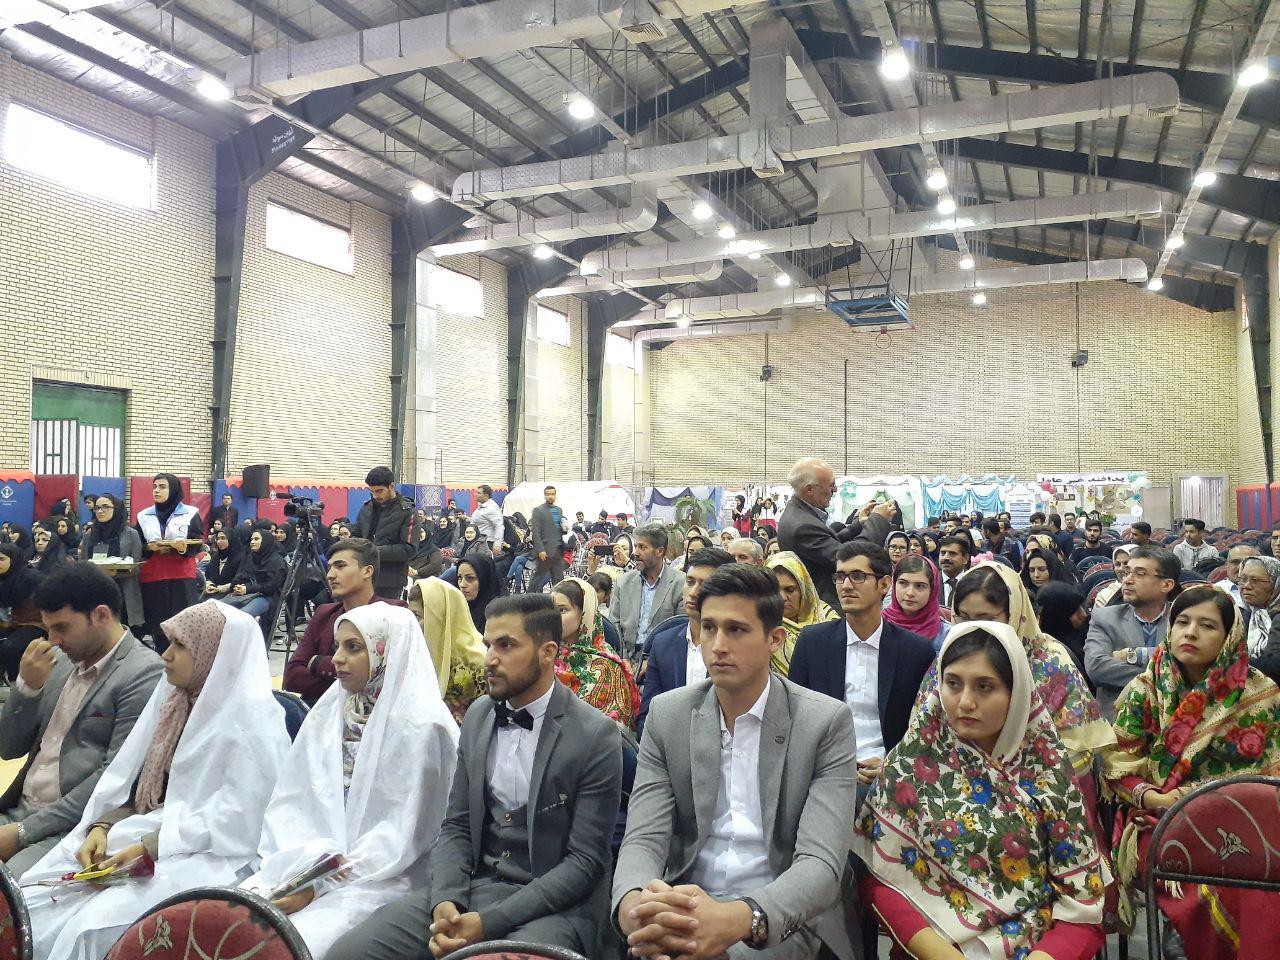 جشن ازدواج دانشجویی در دانشگاه پیام نور استان با مشارکت مجمع ازدواج جوانان